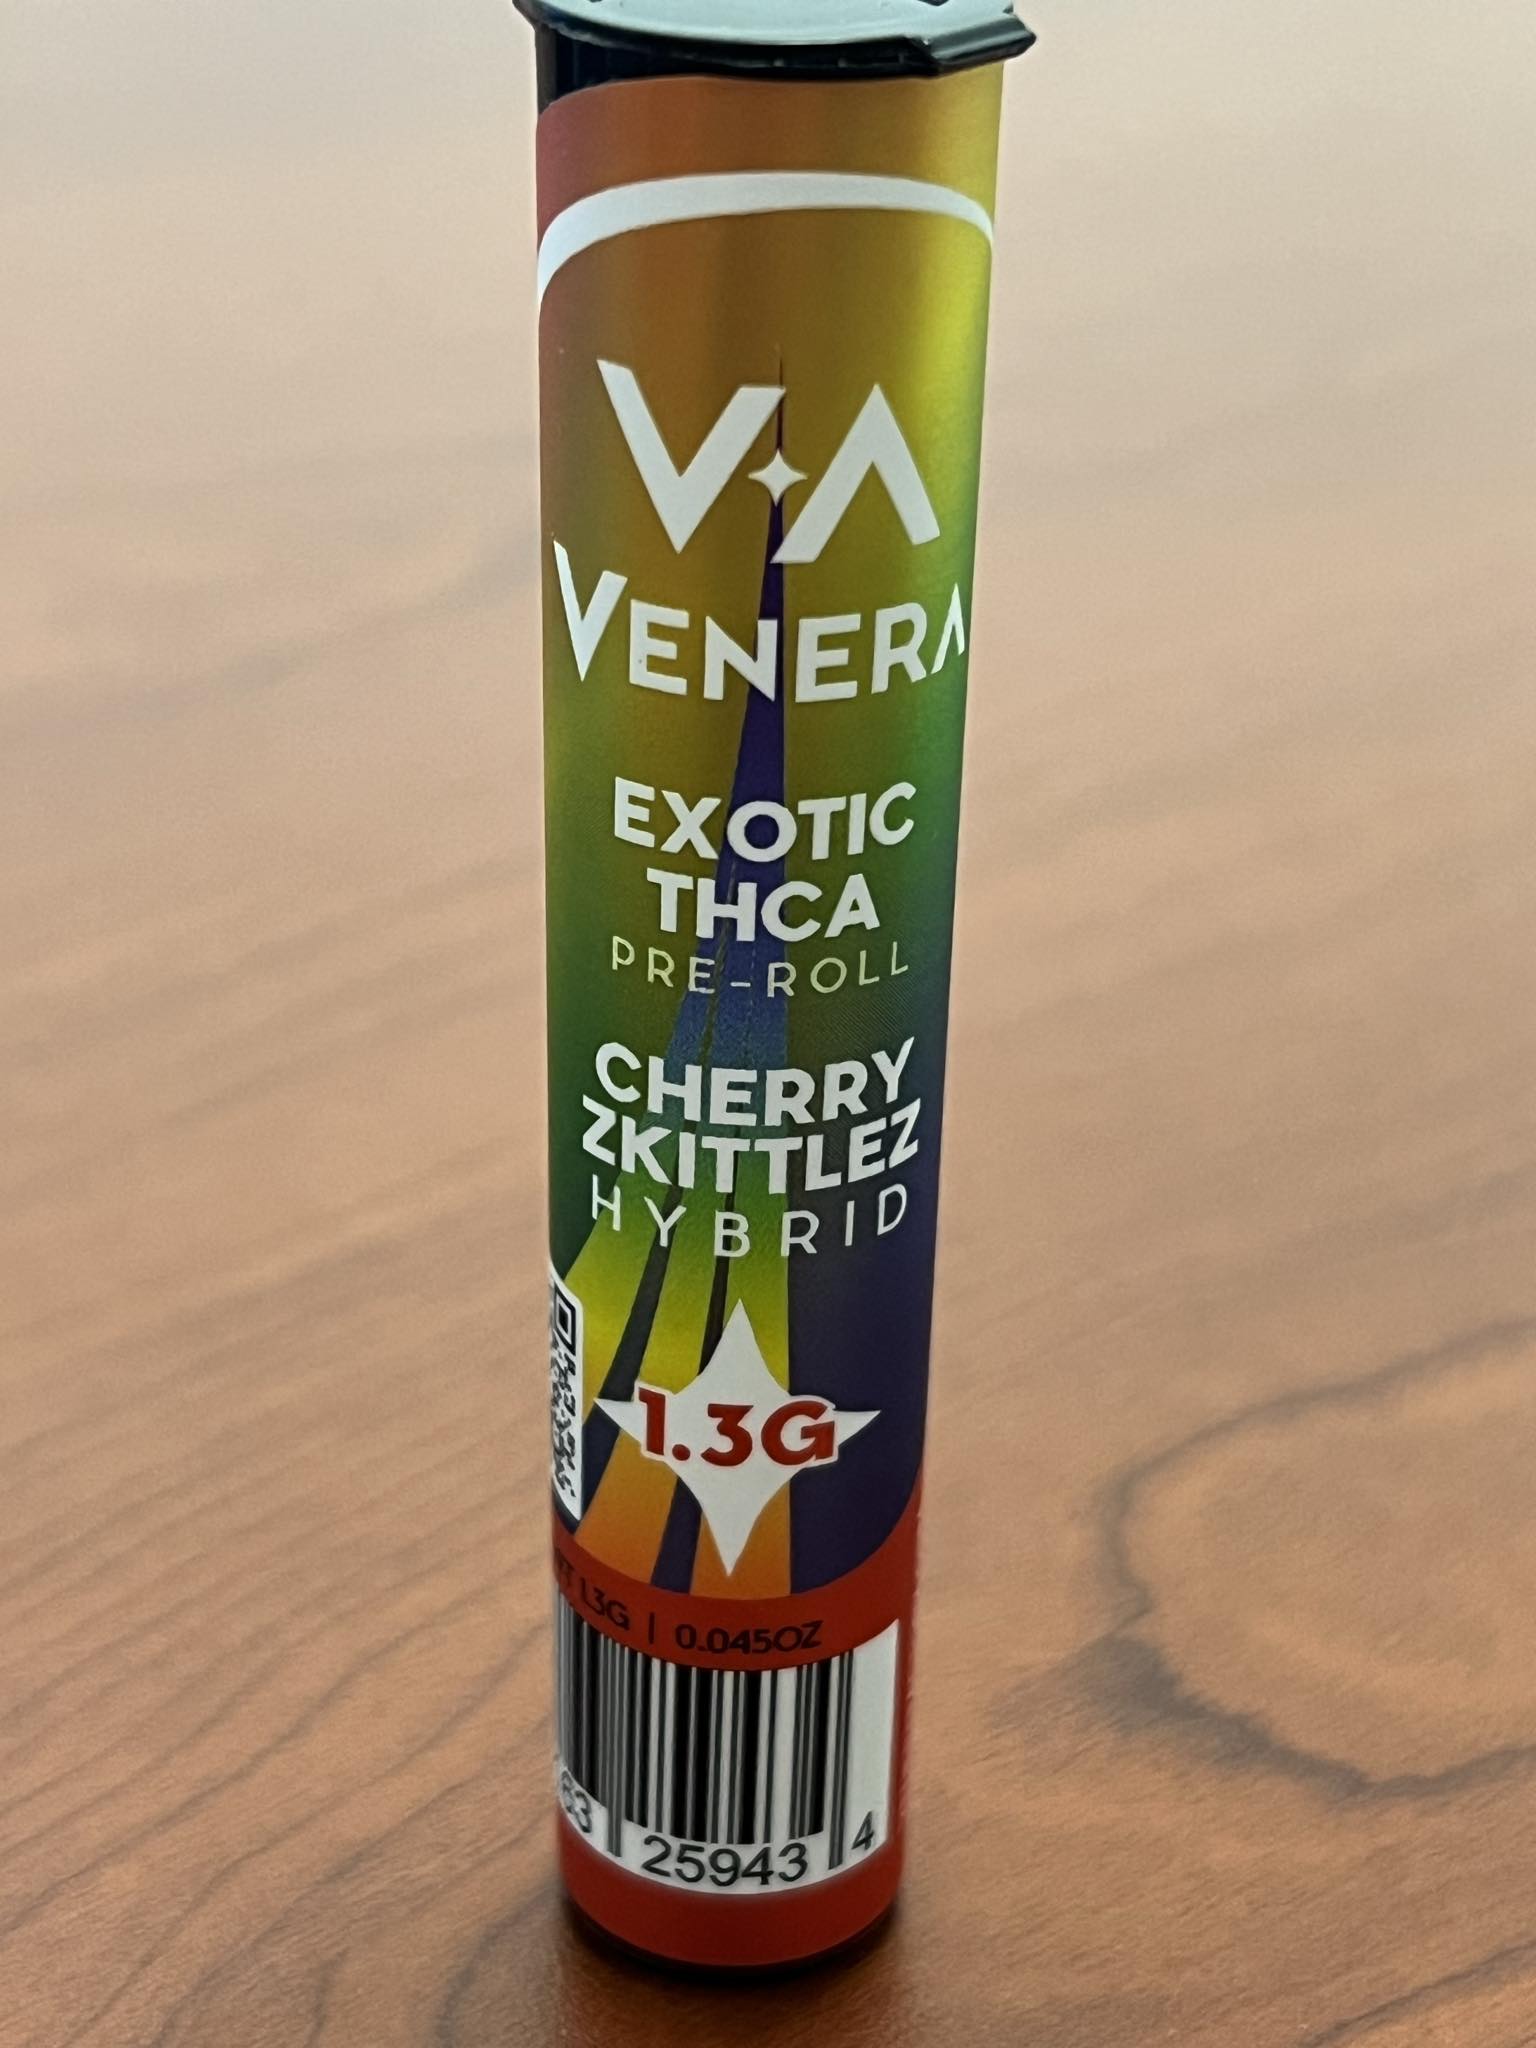 VENERA EXOTIC THC-A PRE-ROLLS 1.3GRAMS | SINGLES